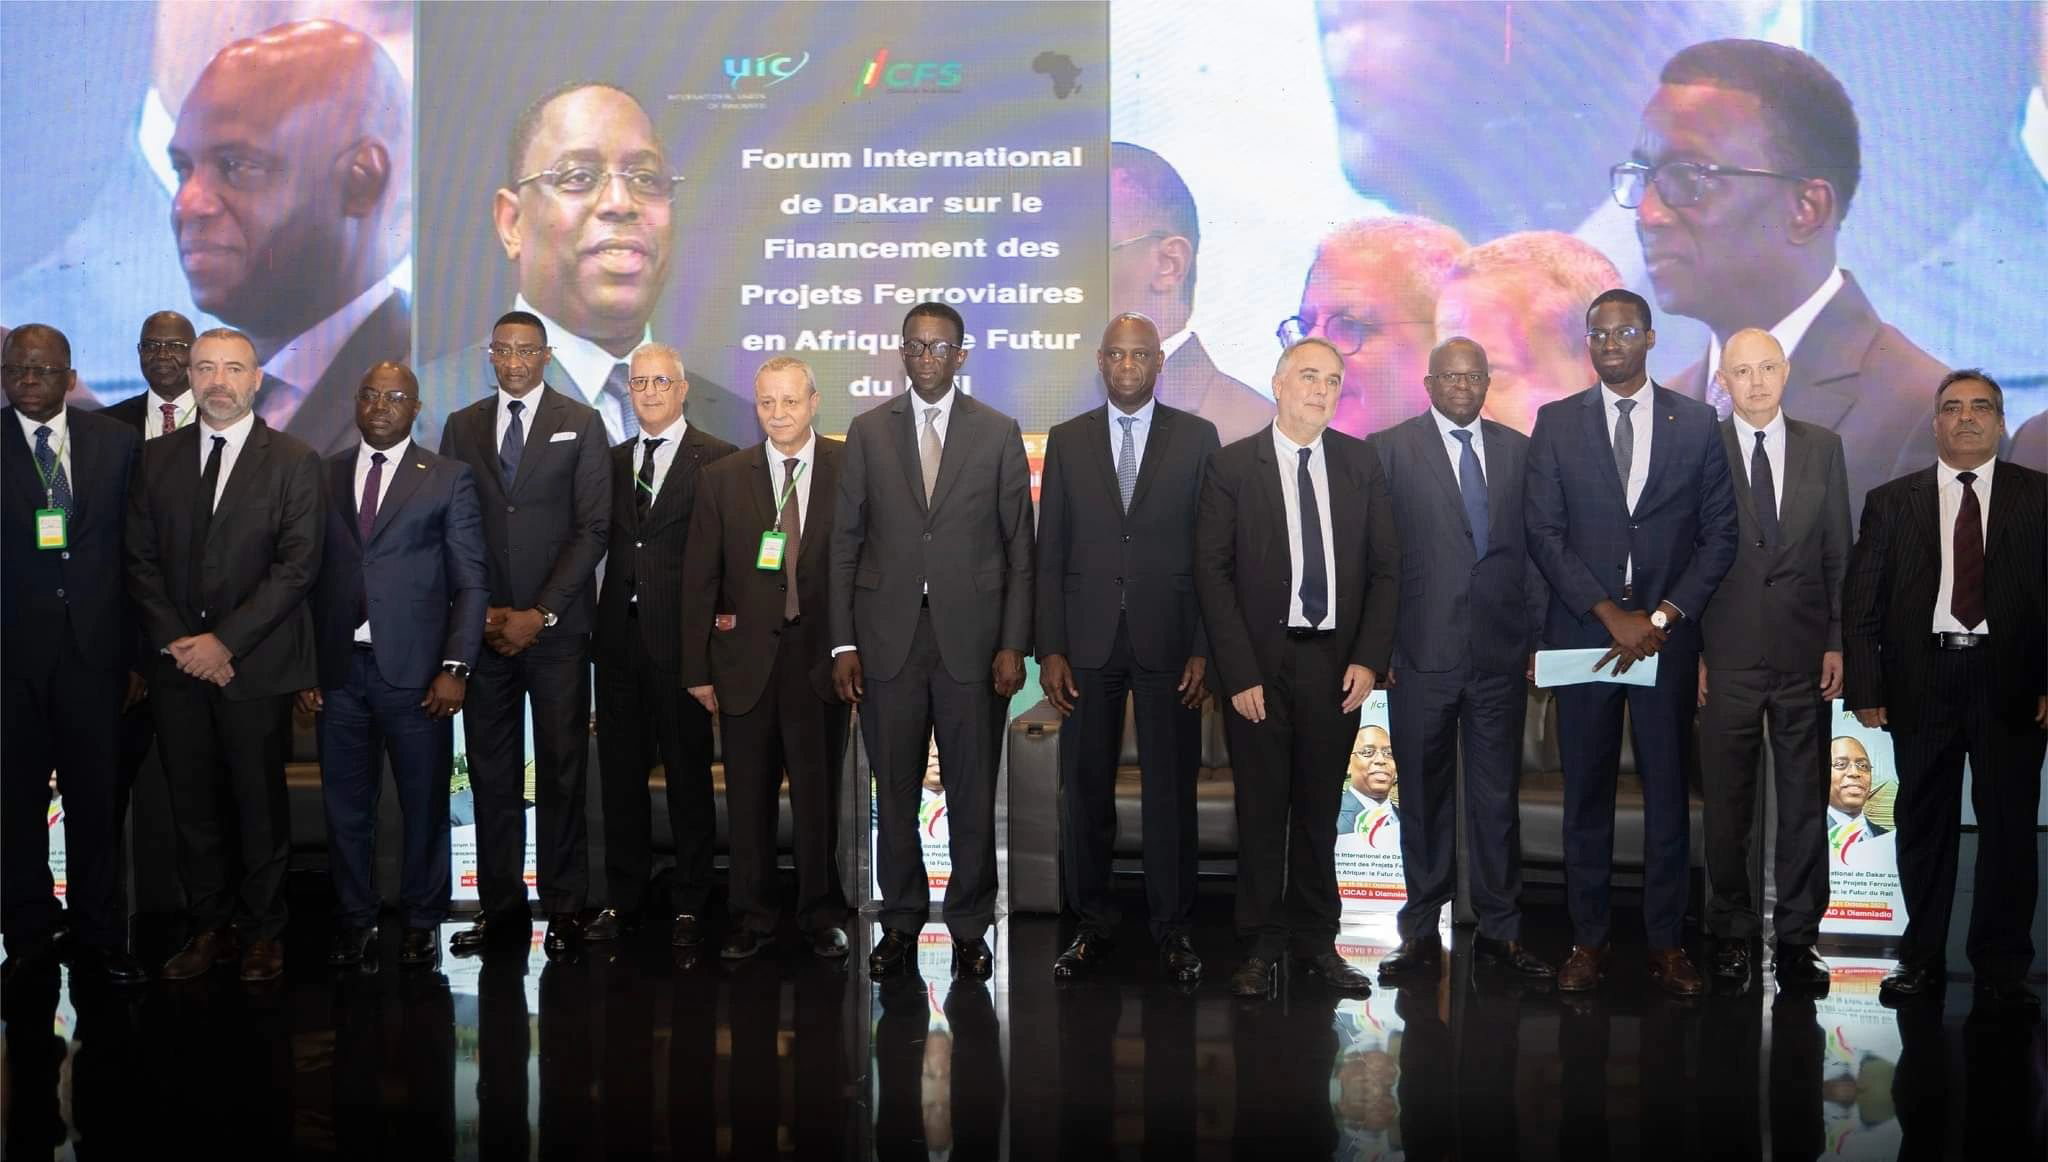 Forum International sur le Financement des Projets Ferroviaires en Afrique : Le Futur du Rail à Dakar